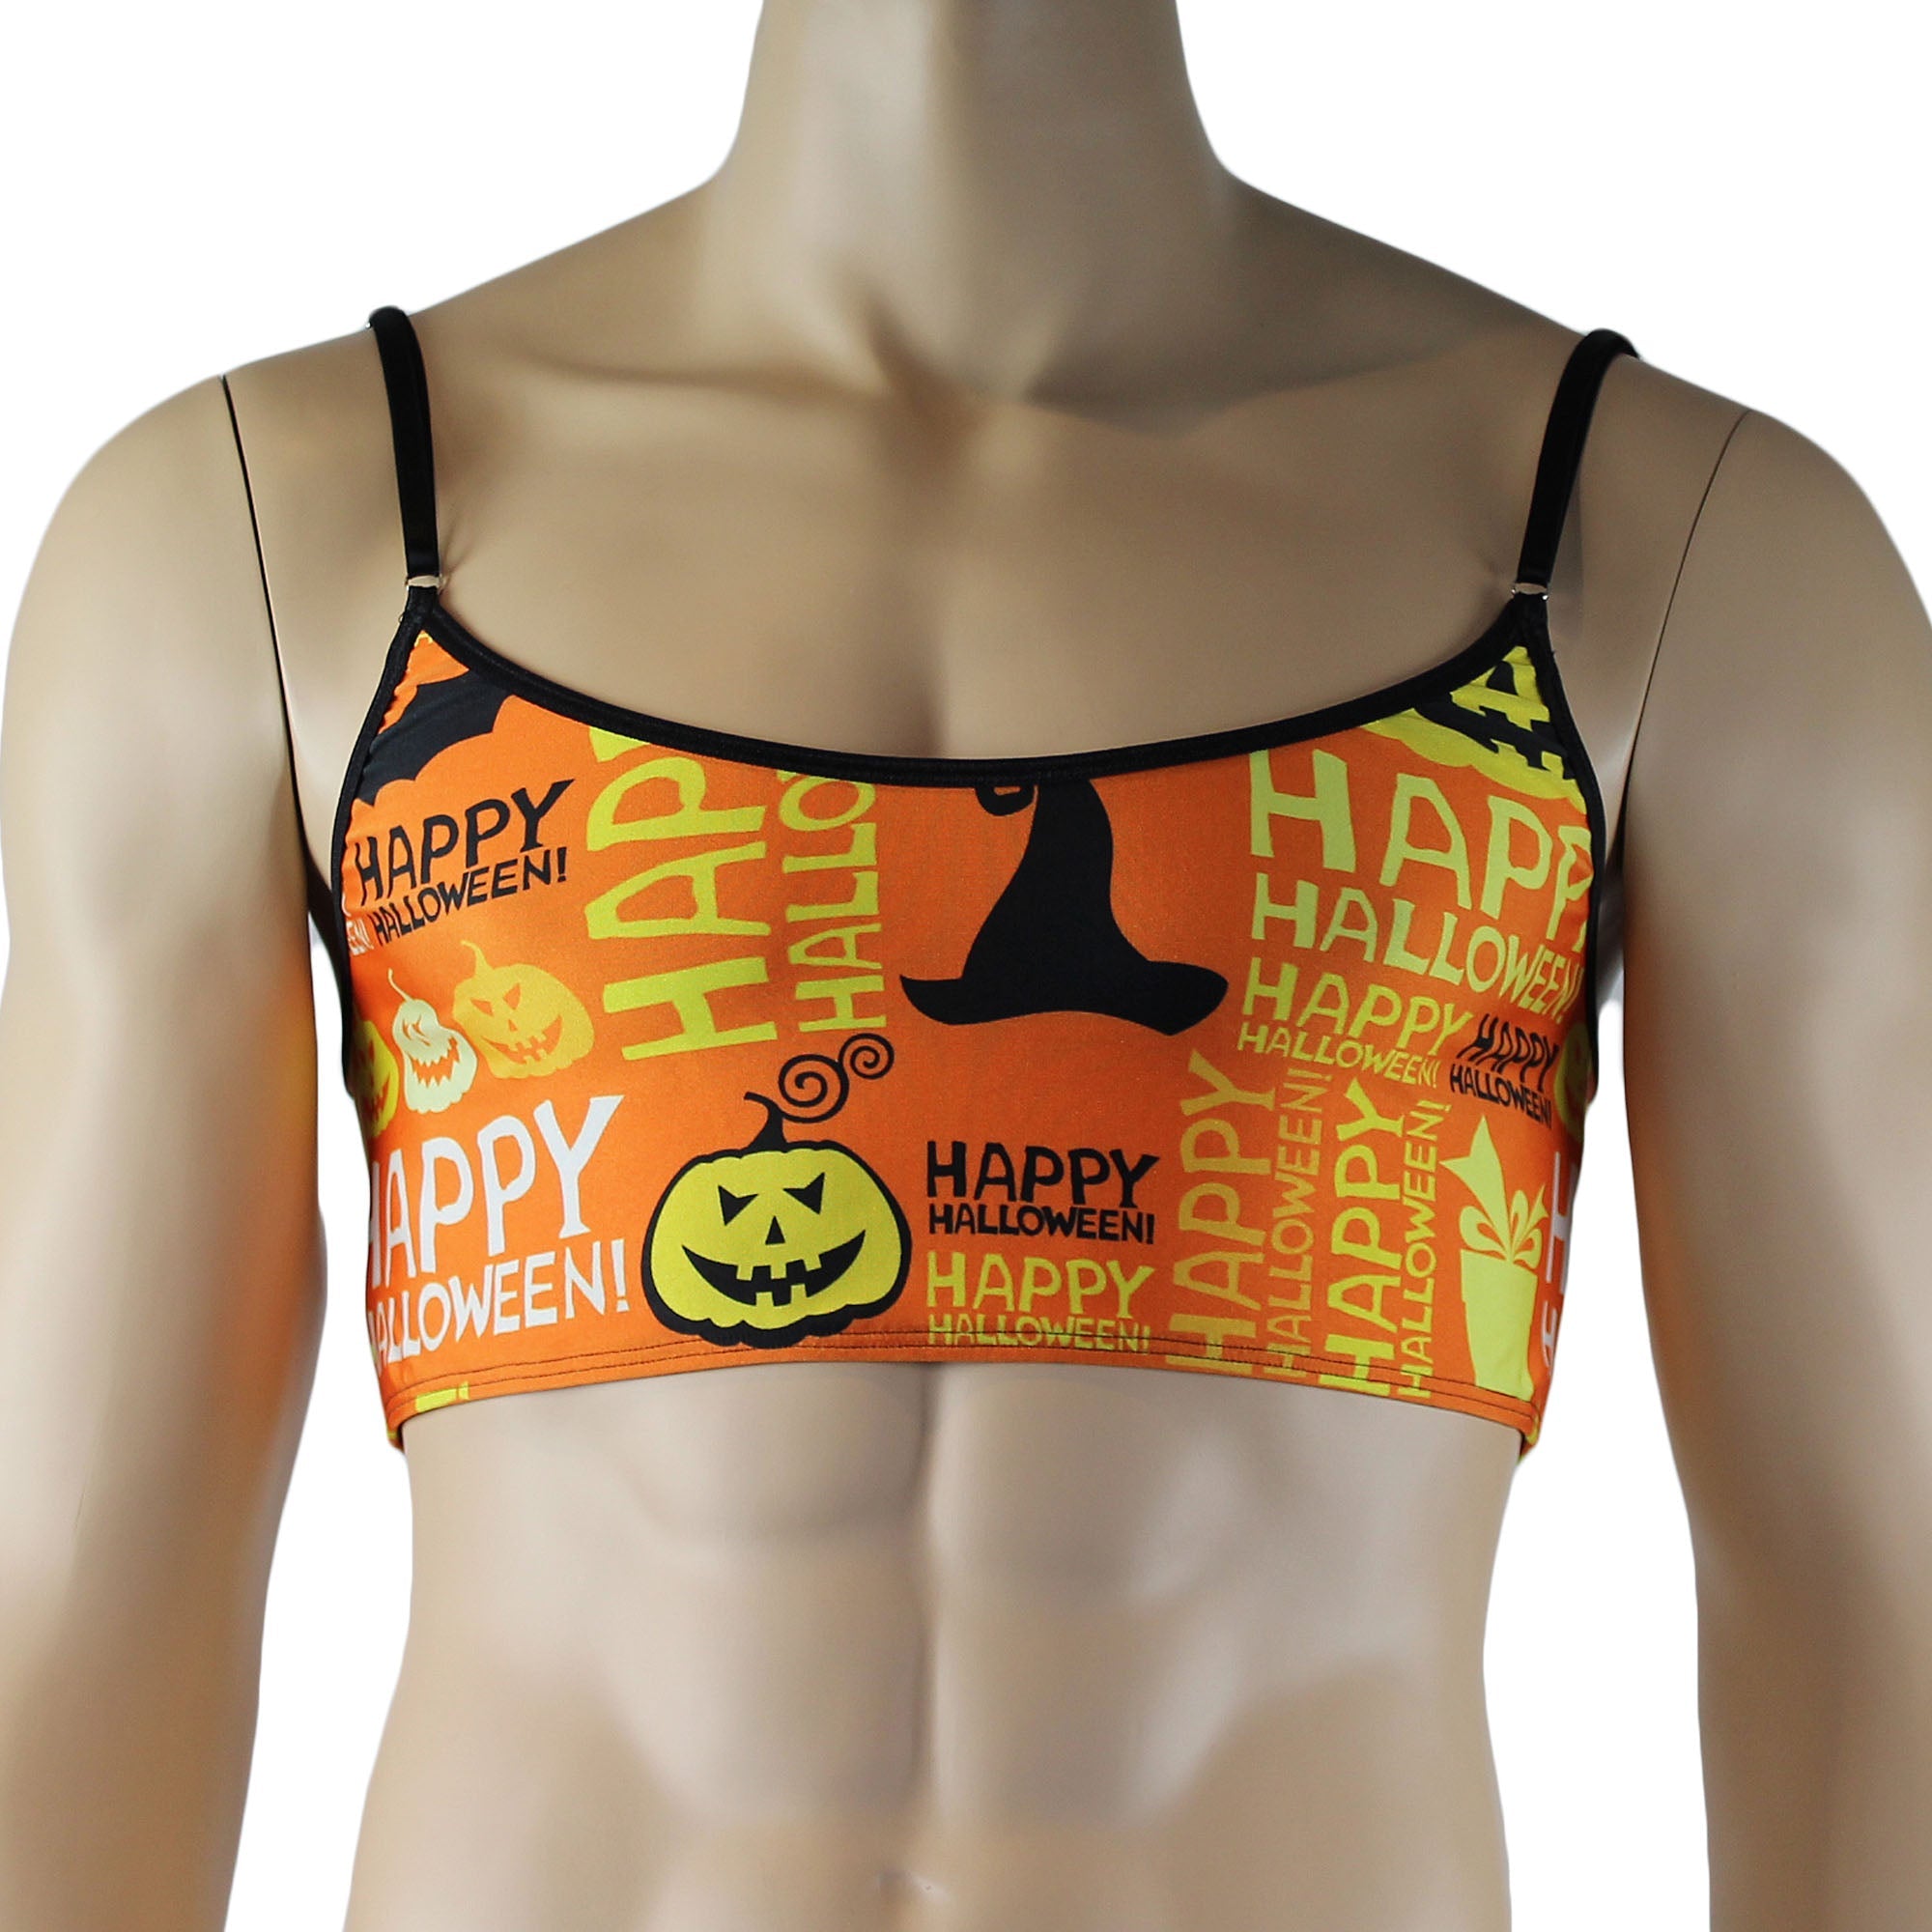 SALE - Mens Happy Halloween Camisole Top Underwear, Halloween Pumpkins